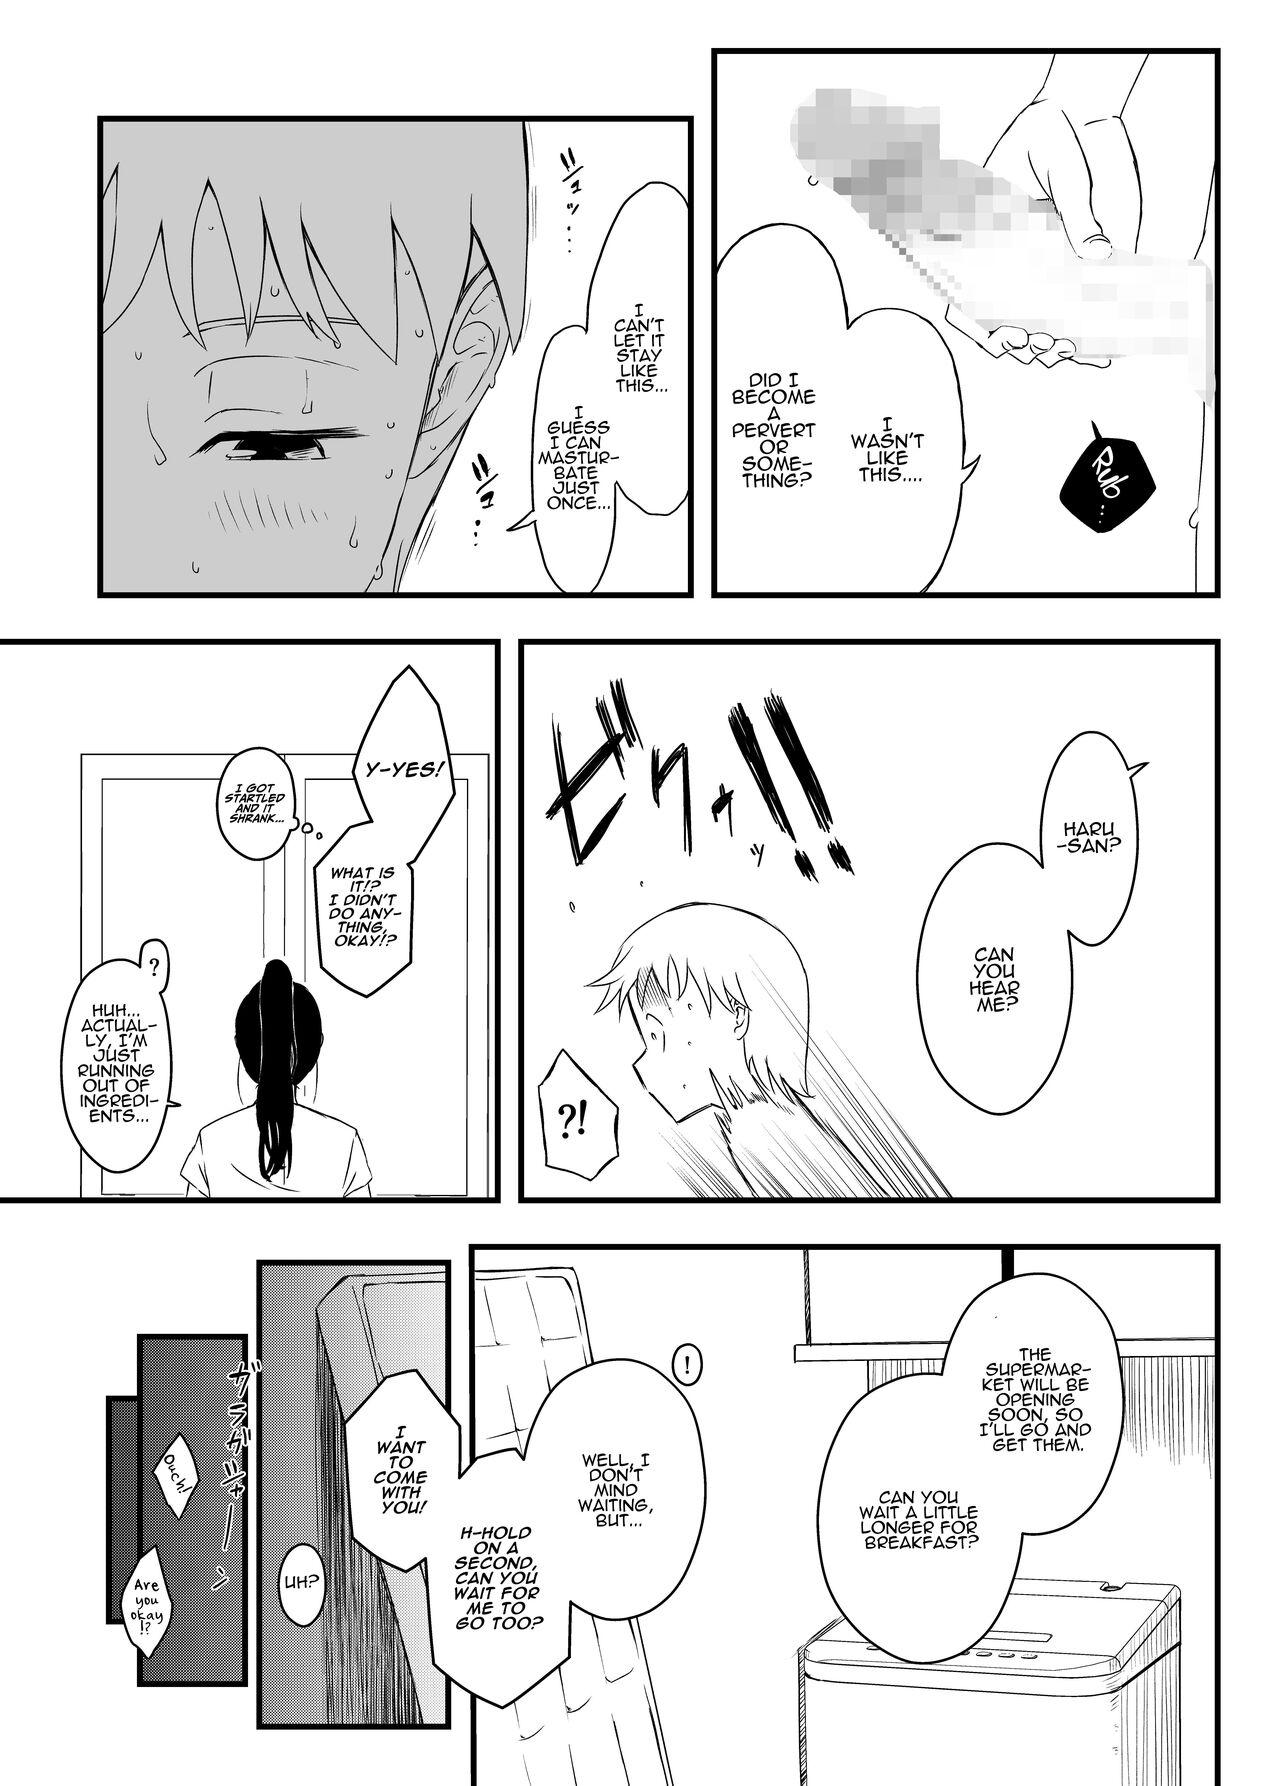 Top [Senaka] Giri no Ane to no 7-kakan Seikatsu - 4 | 7 Days with My Stepsister Day 4 [English] [ADTL] - Original Teenie - Page 10